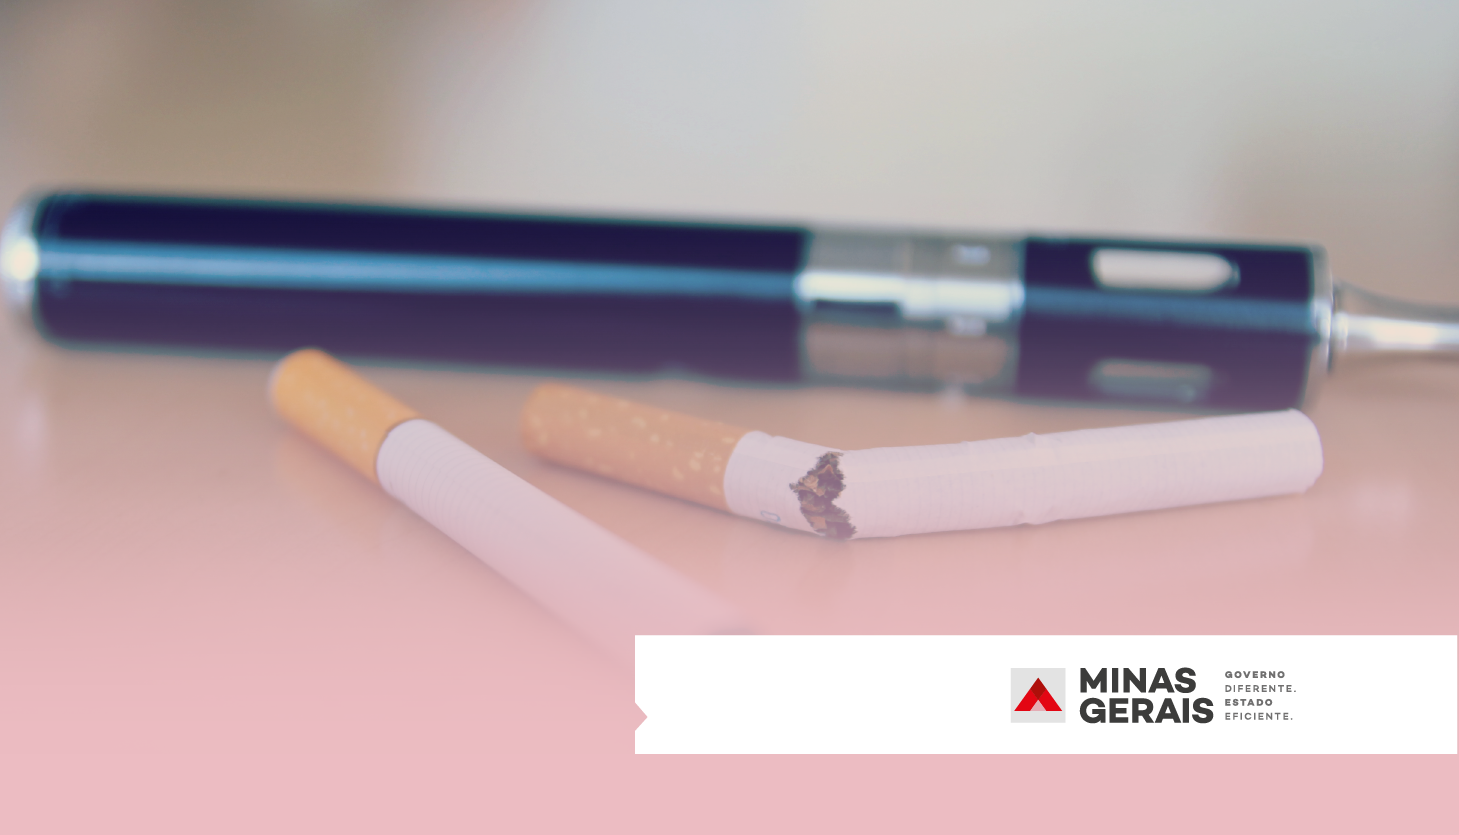 Subsecretaria de Políticas sobre Drogas alerta sobre os riscos dos cigarros eletrônicos no Dia Mundial Sem Tabaco 